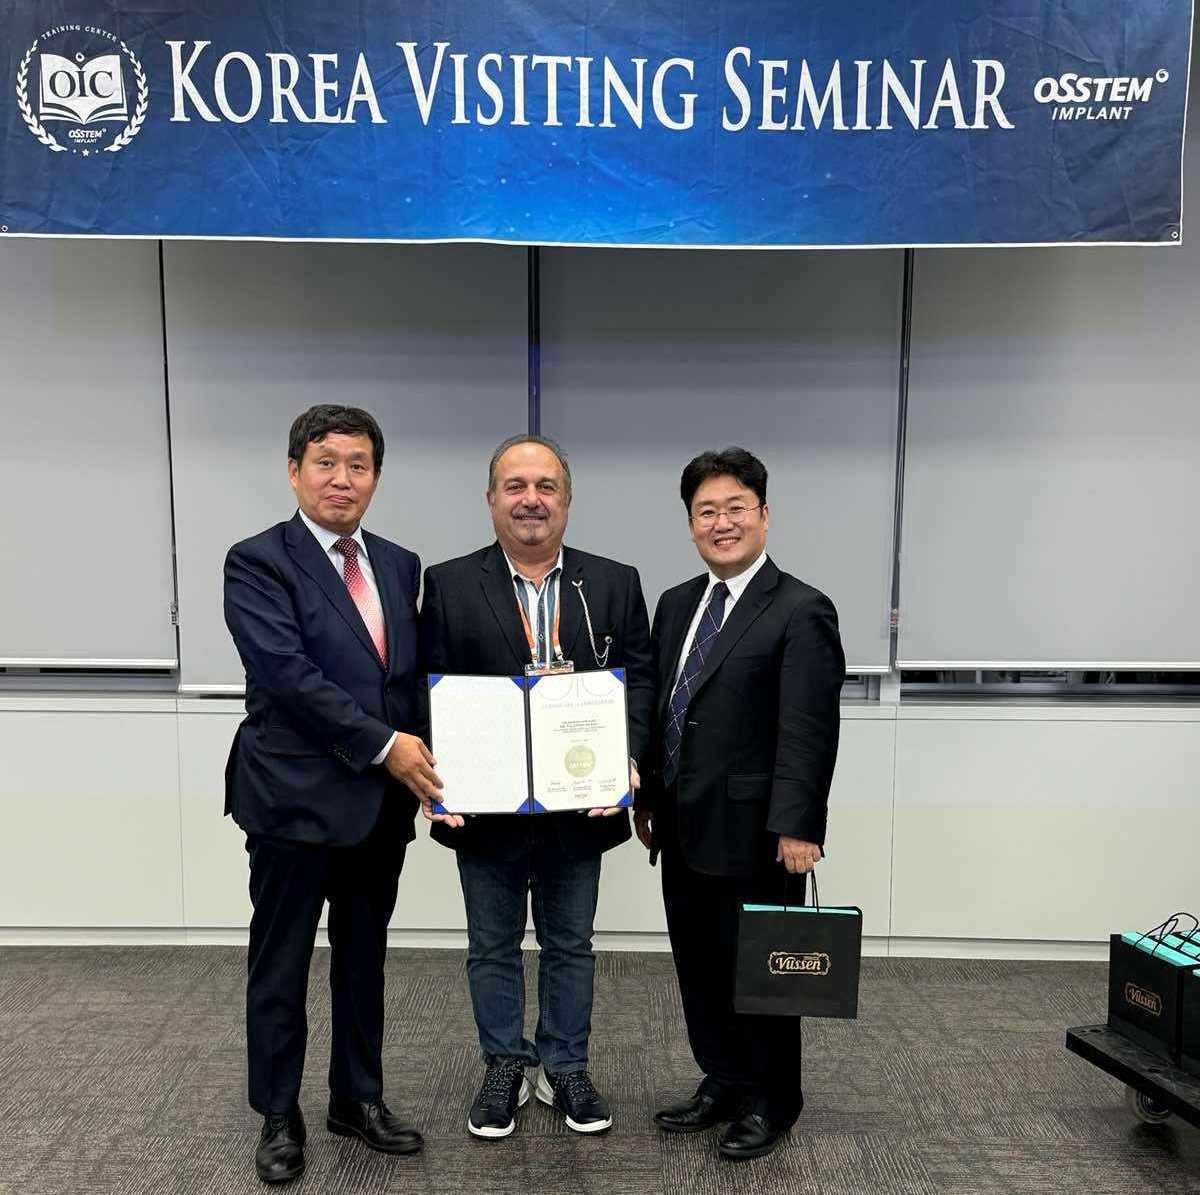   Д-р Дуков и д-р Сапункьова посетиха централата на Osstem Implant в Южна Корея